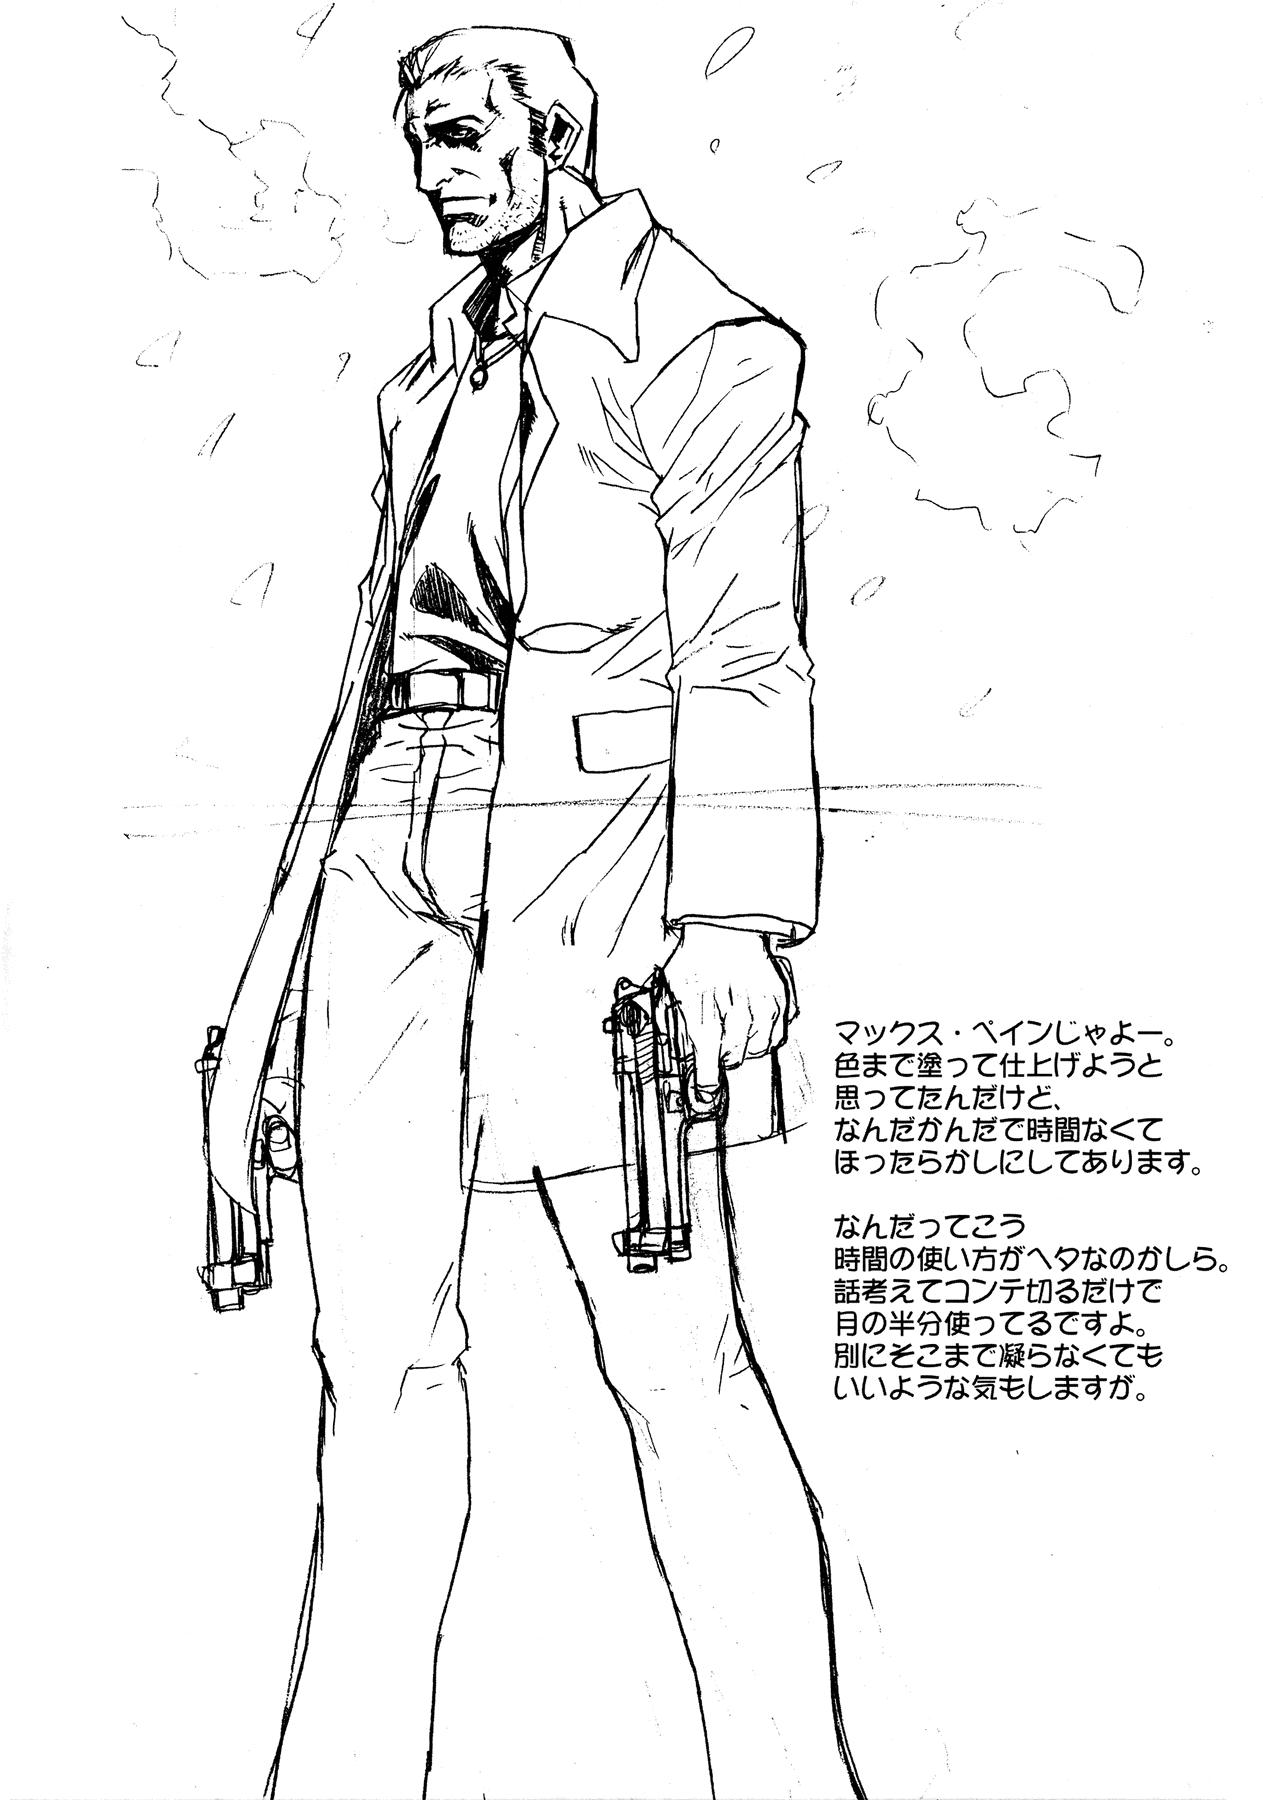 Blowjob Shisei San-shiki Doujin - Guilty gear X - Page 3